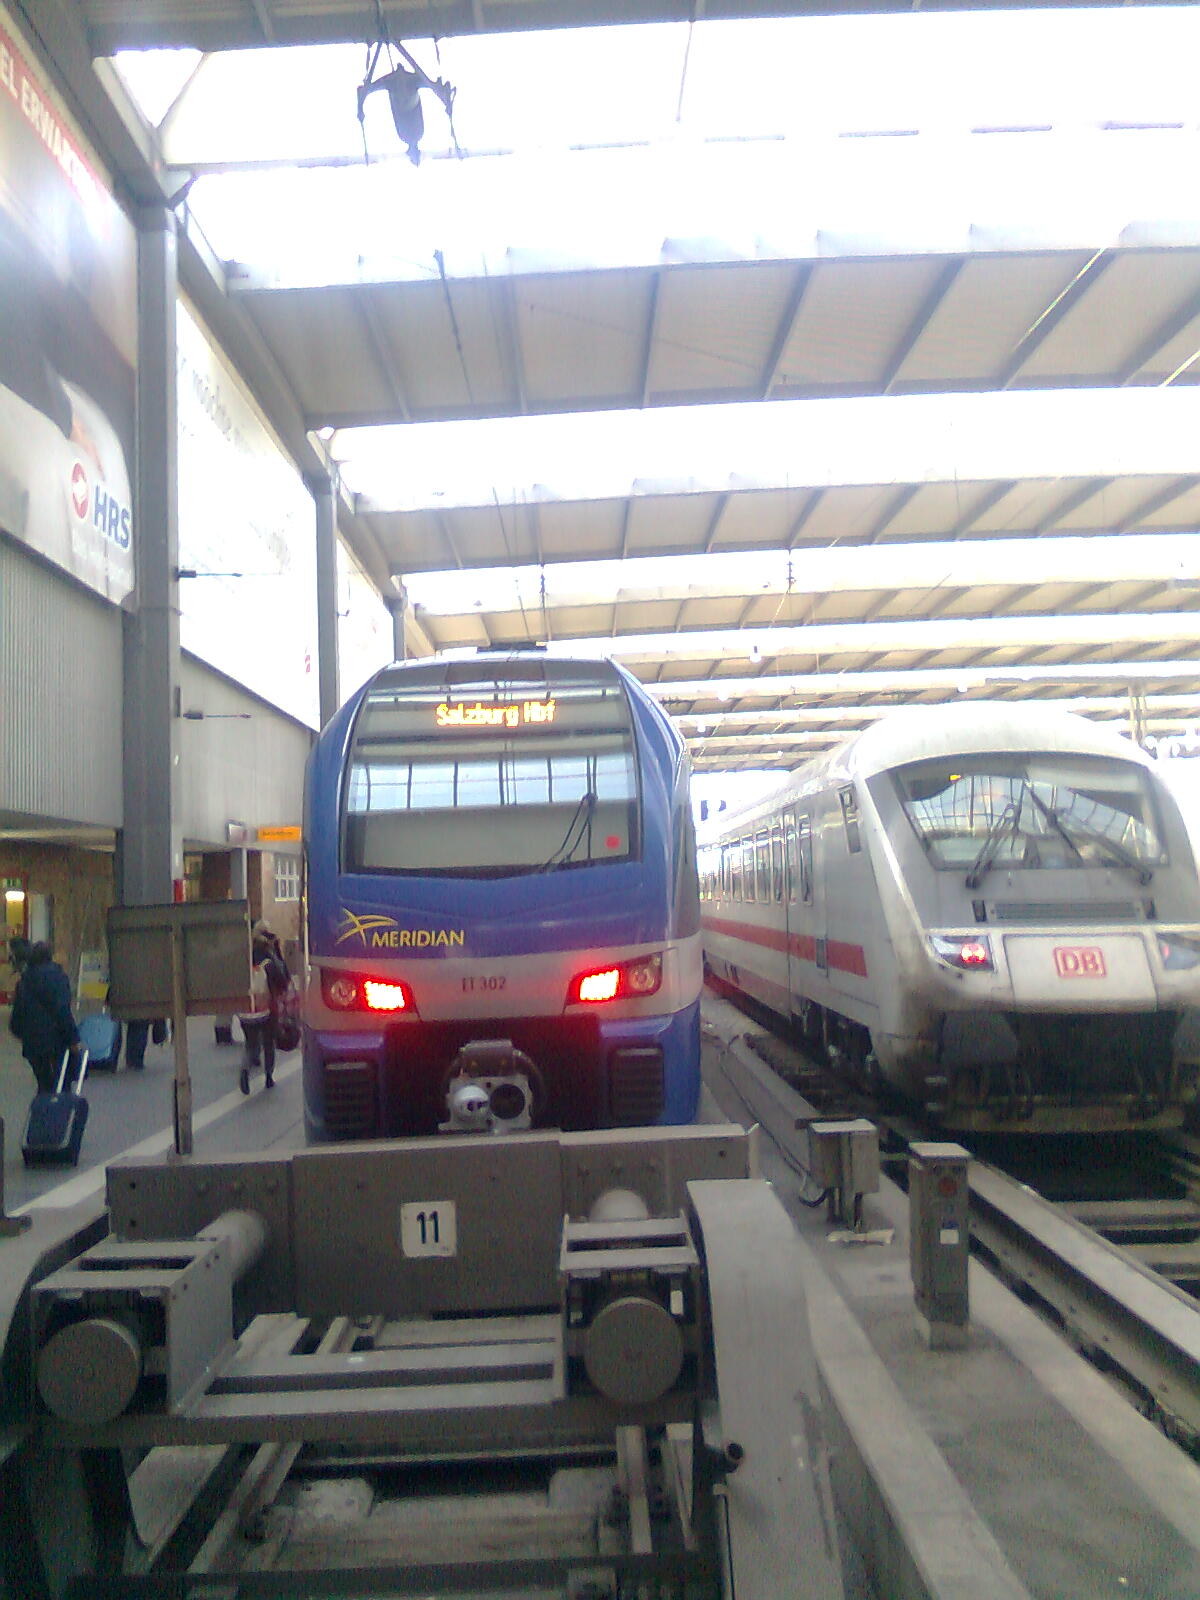 Bild 1 Bayerische Oberlandbahn GmbH in Holzkirchen